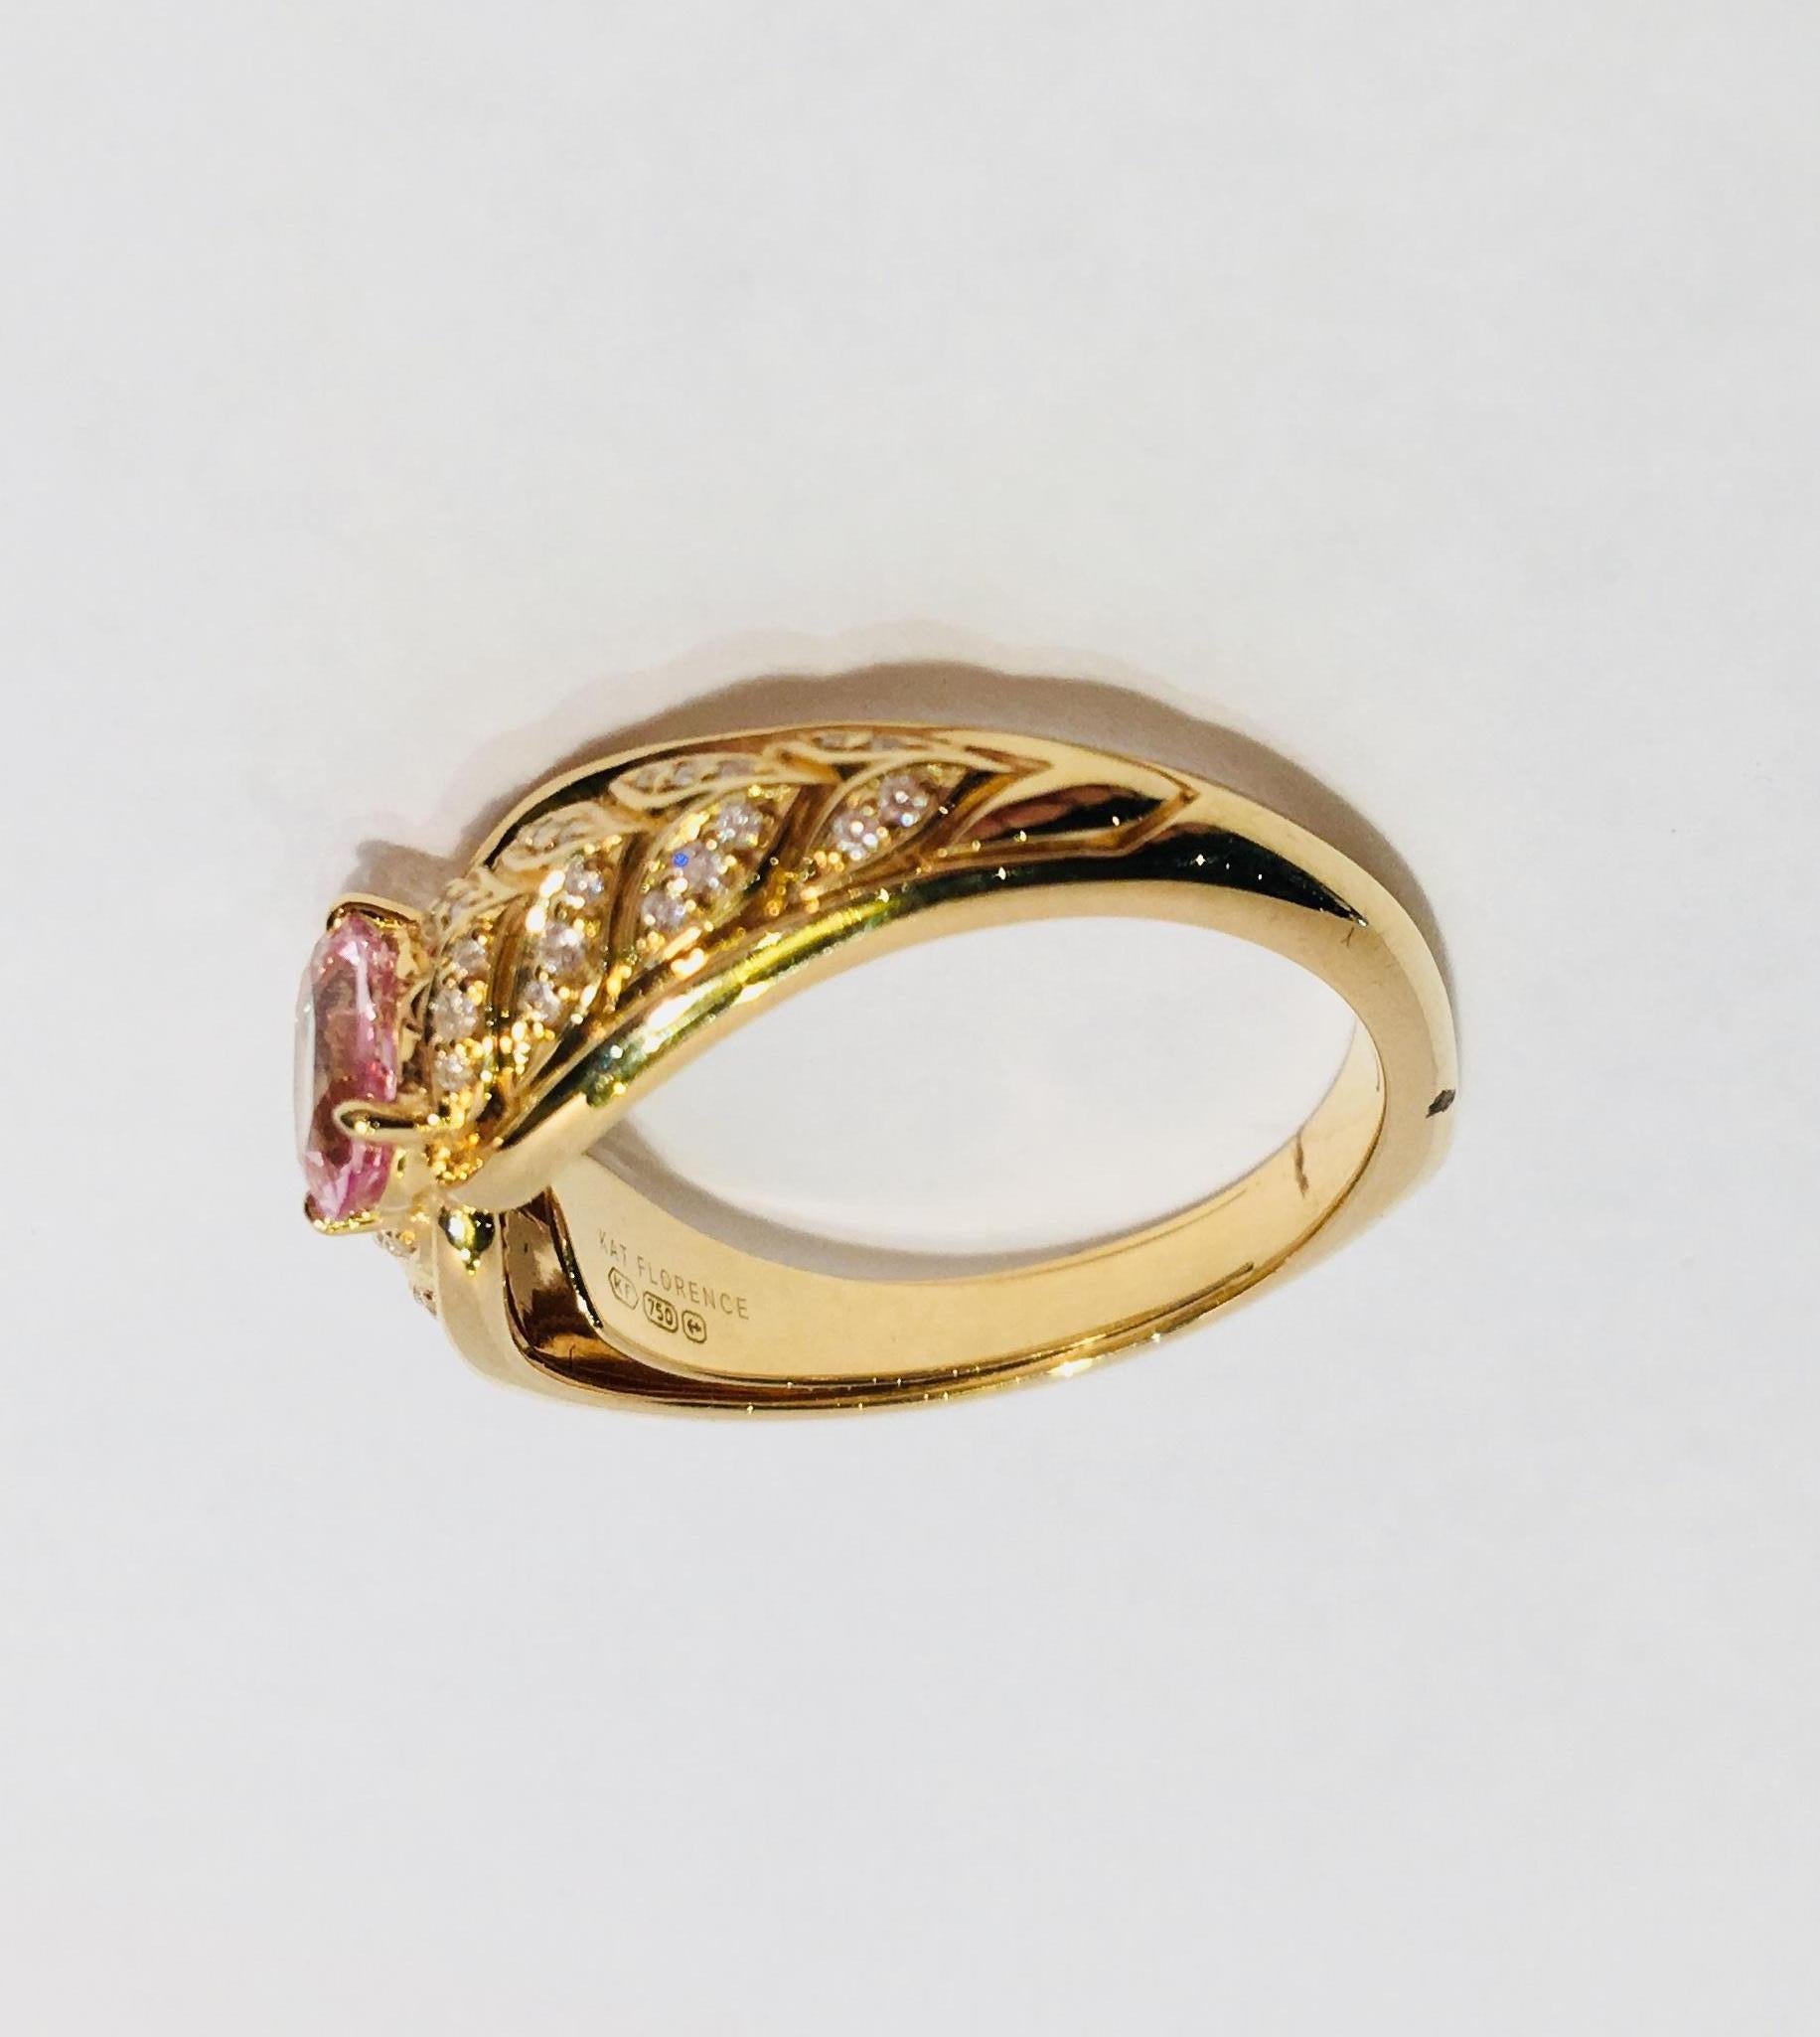 Kat Florence Pink Mogok Spinel D Flawless Diamonds 18 Karat Gold Designer Ring 4